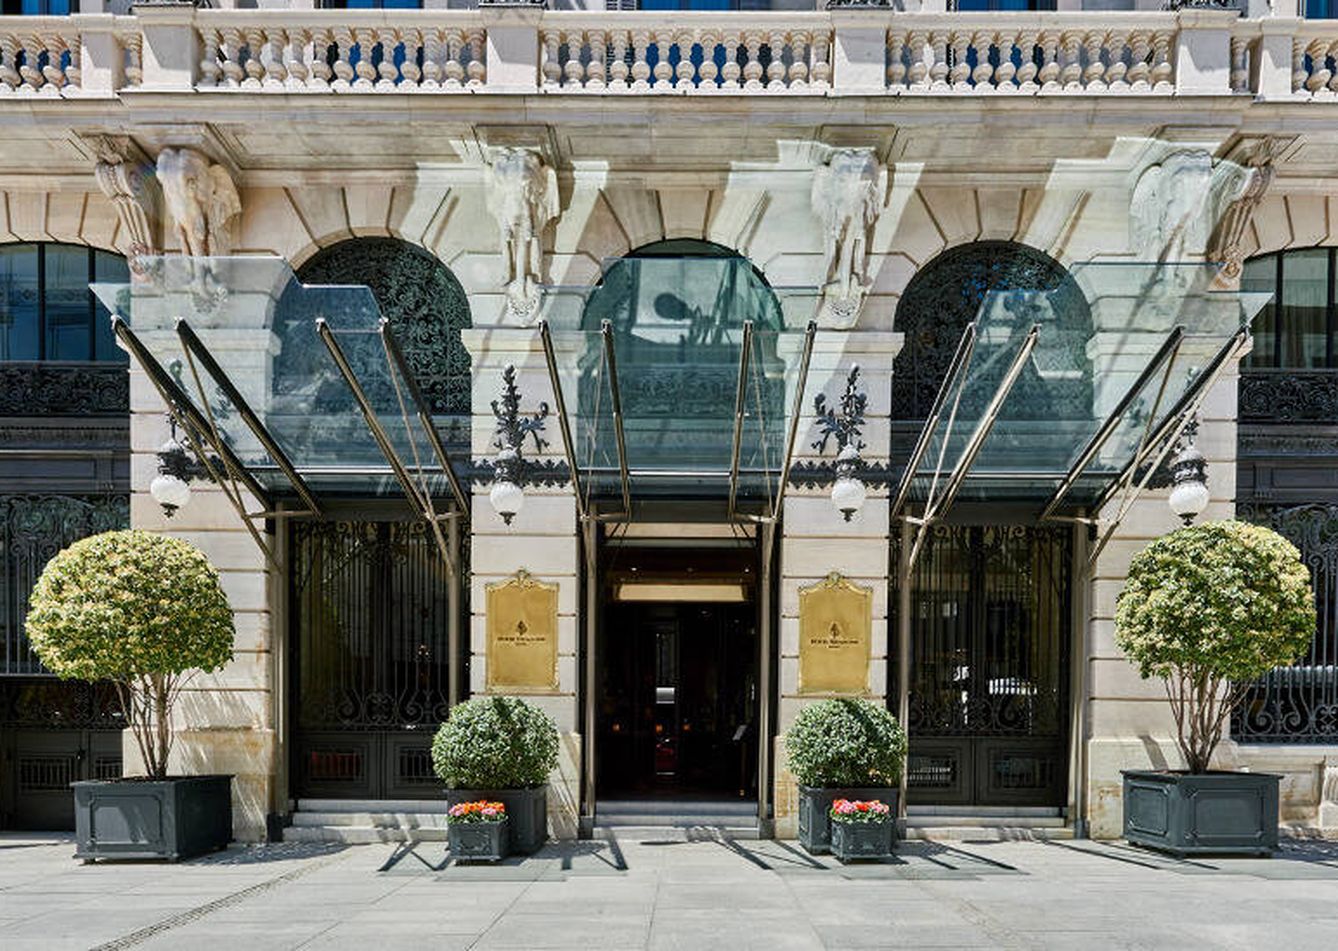 El Hotel Four Seasons, una de las últimas apuestas por el lujo de Madrid. (Cedida)